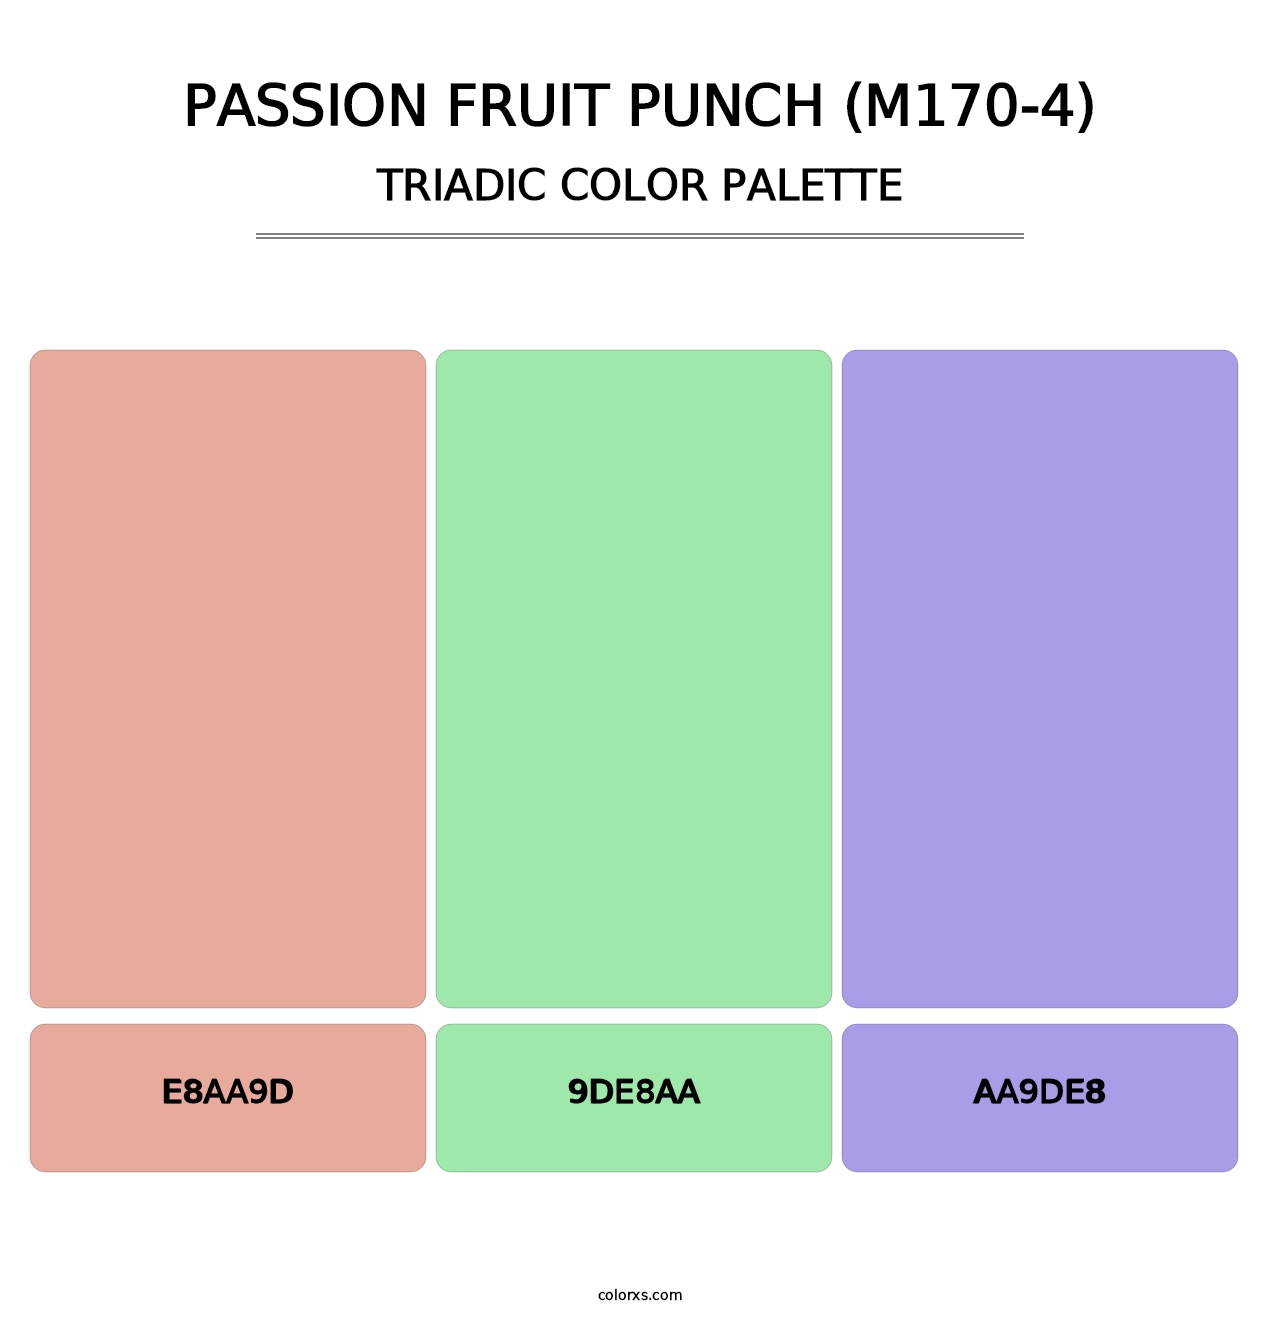 Passion Fruit Punch (M170-4) - Triadic Color Palette